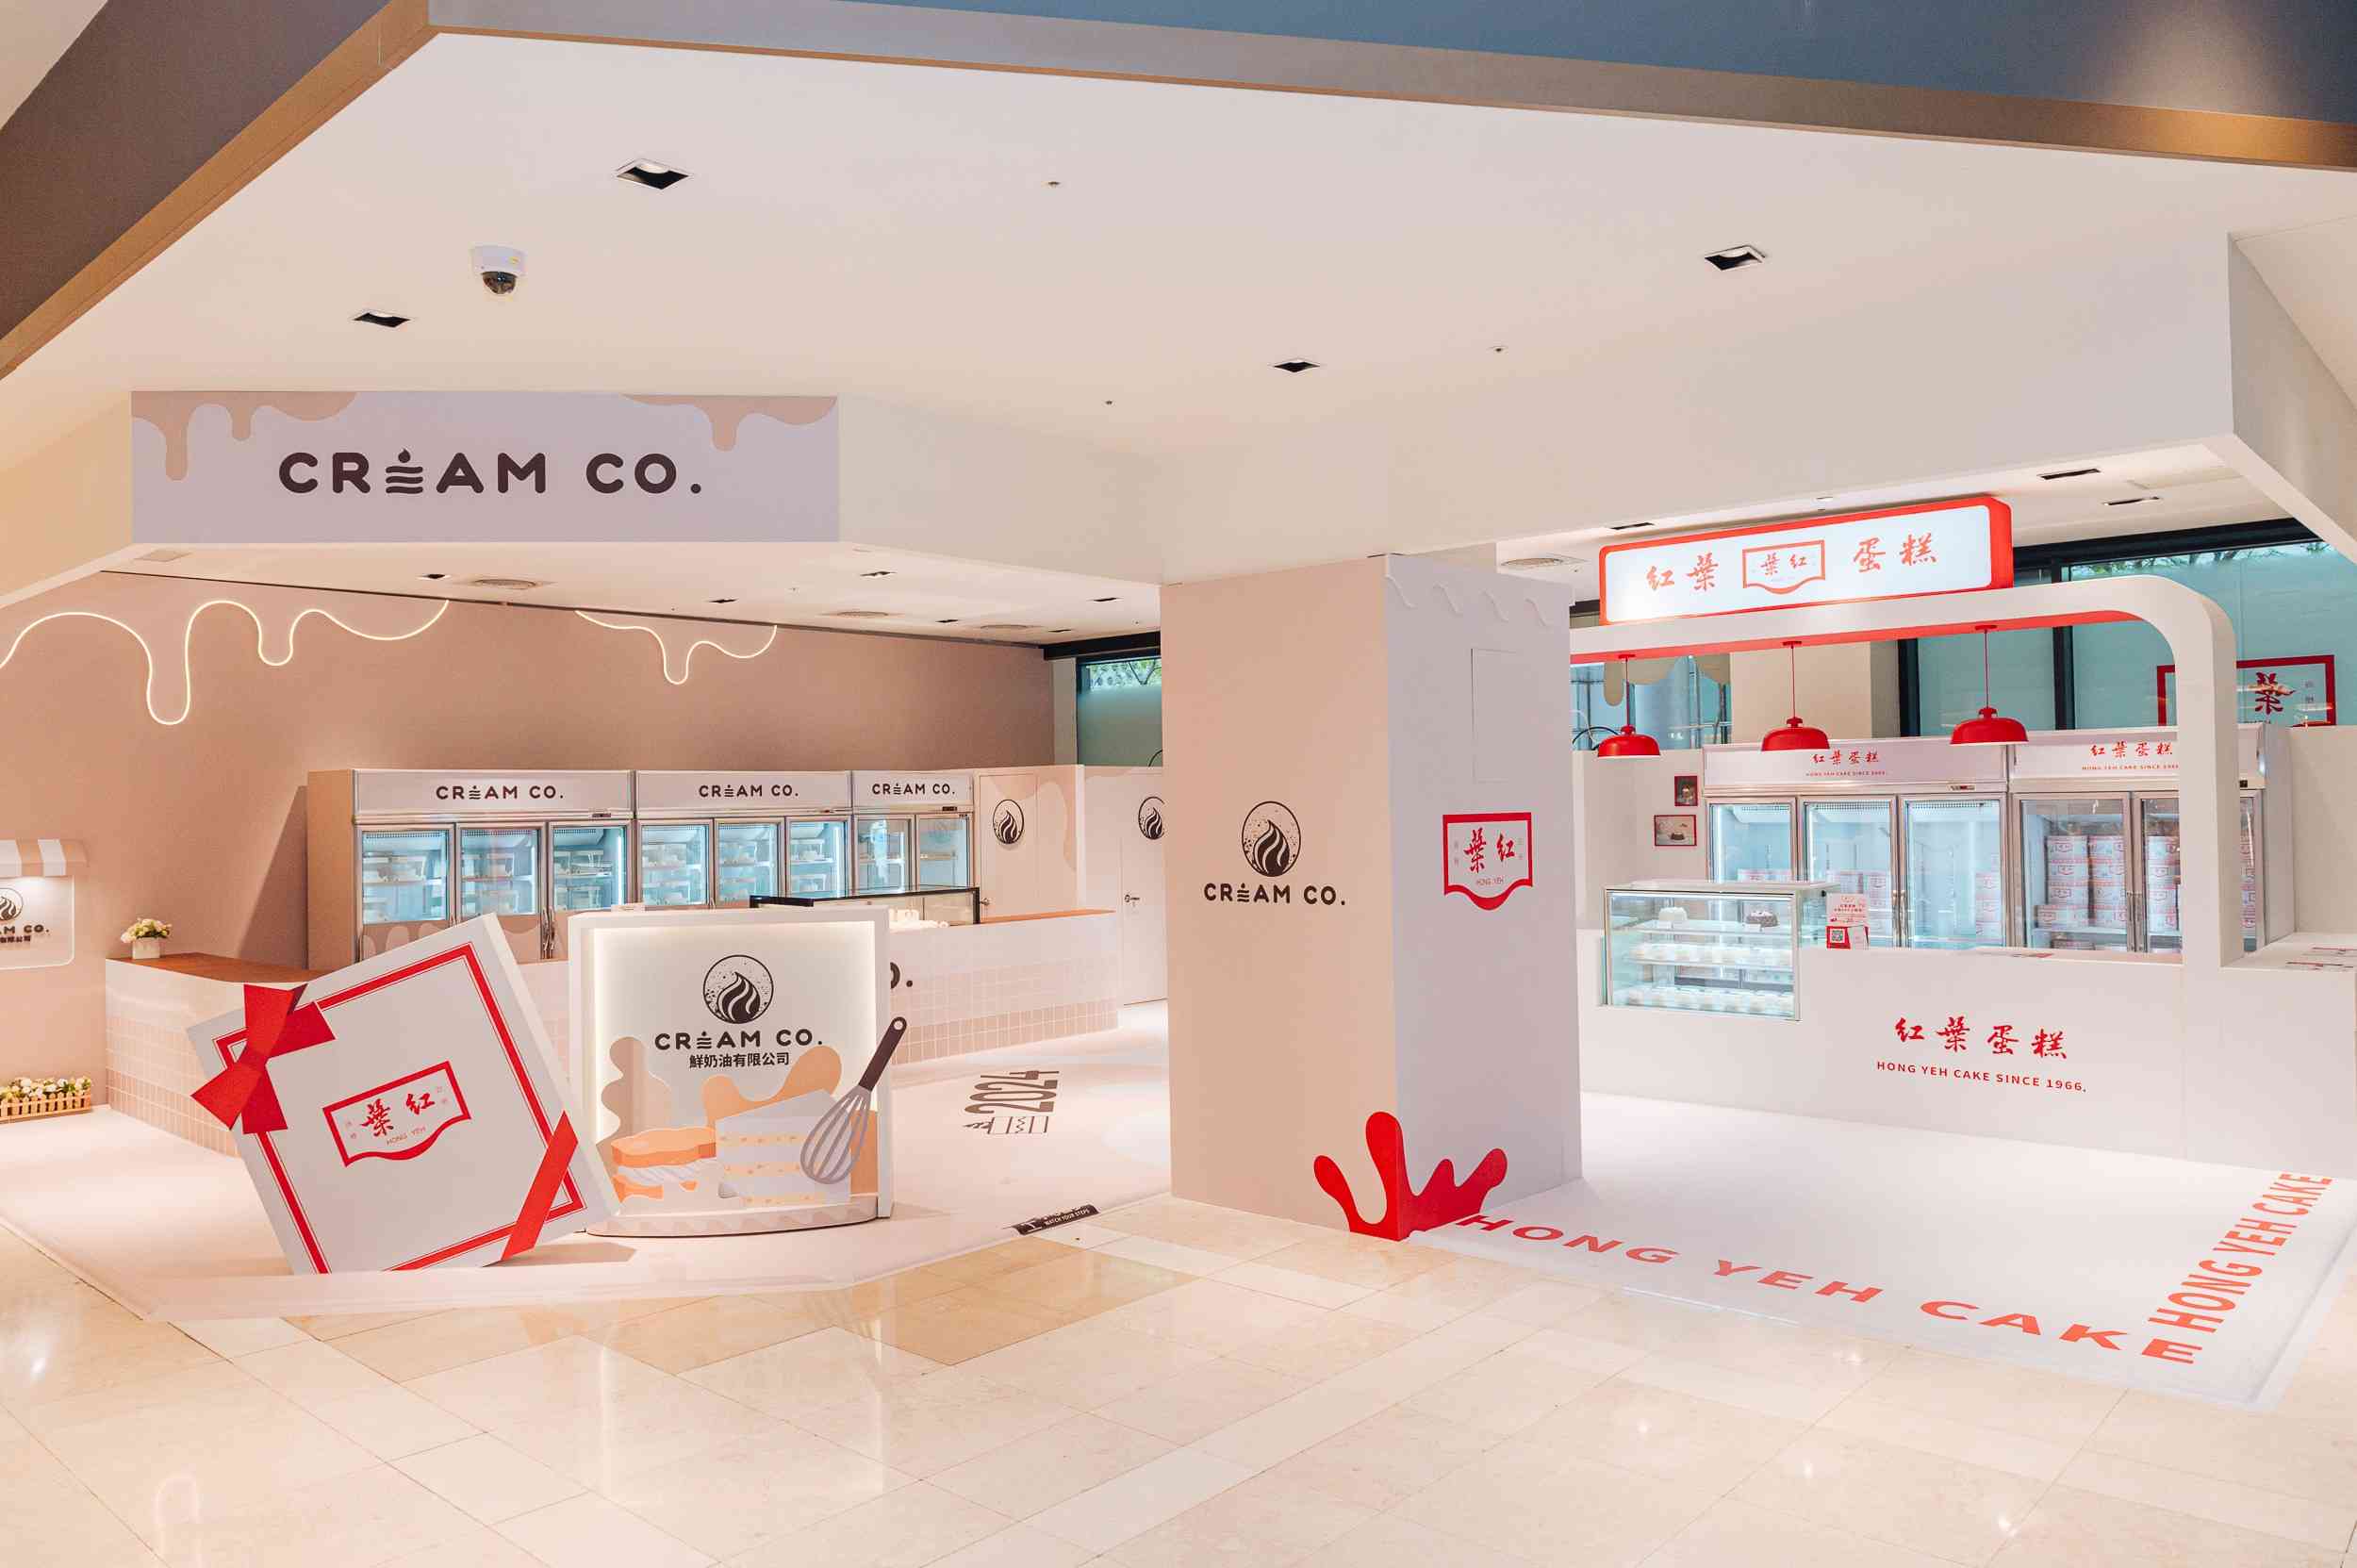 紅葉蛋糕第三代推出新品牌craem-co.與百萬網紅聯名蛋糕-快閃信義新光a8